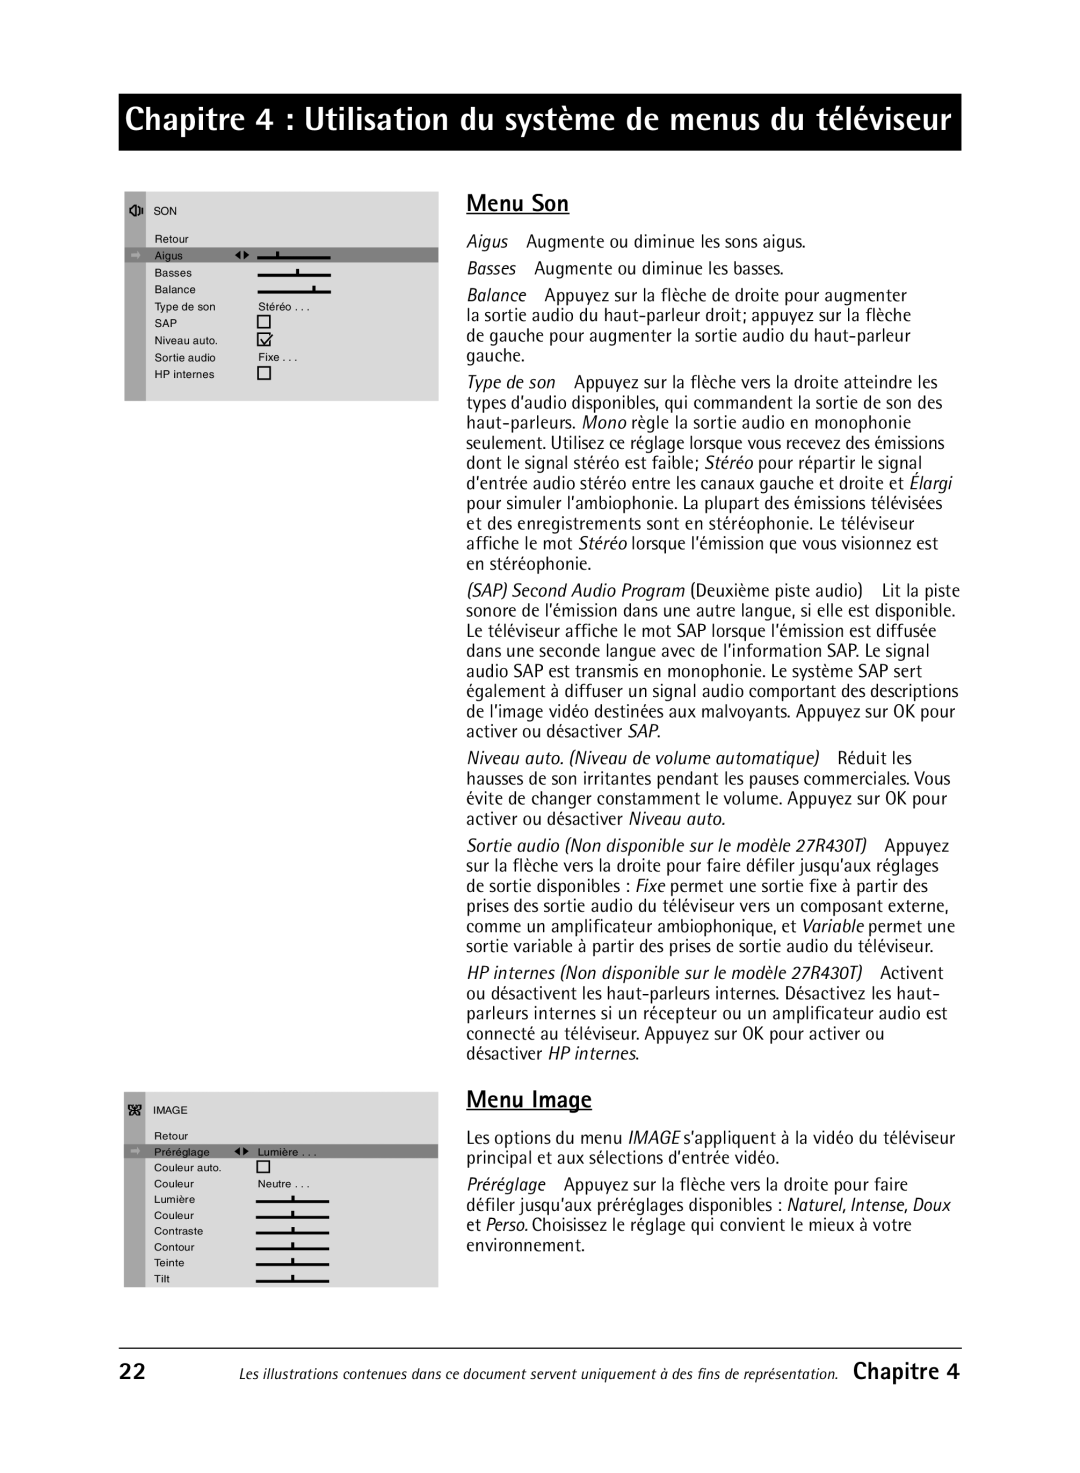 RCA 36V430T manual Menu Son, Menu Image, Chapitre 4 Utilisation du système de menus du téléviseur 